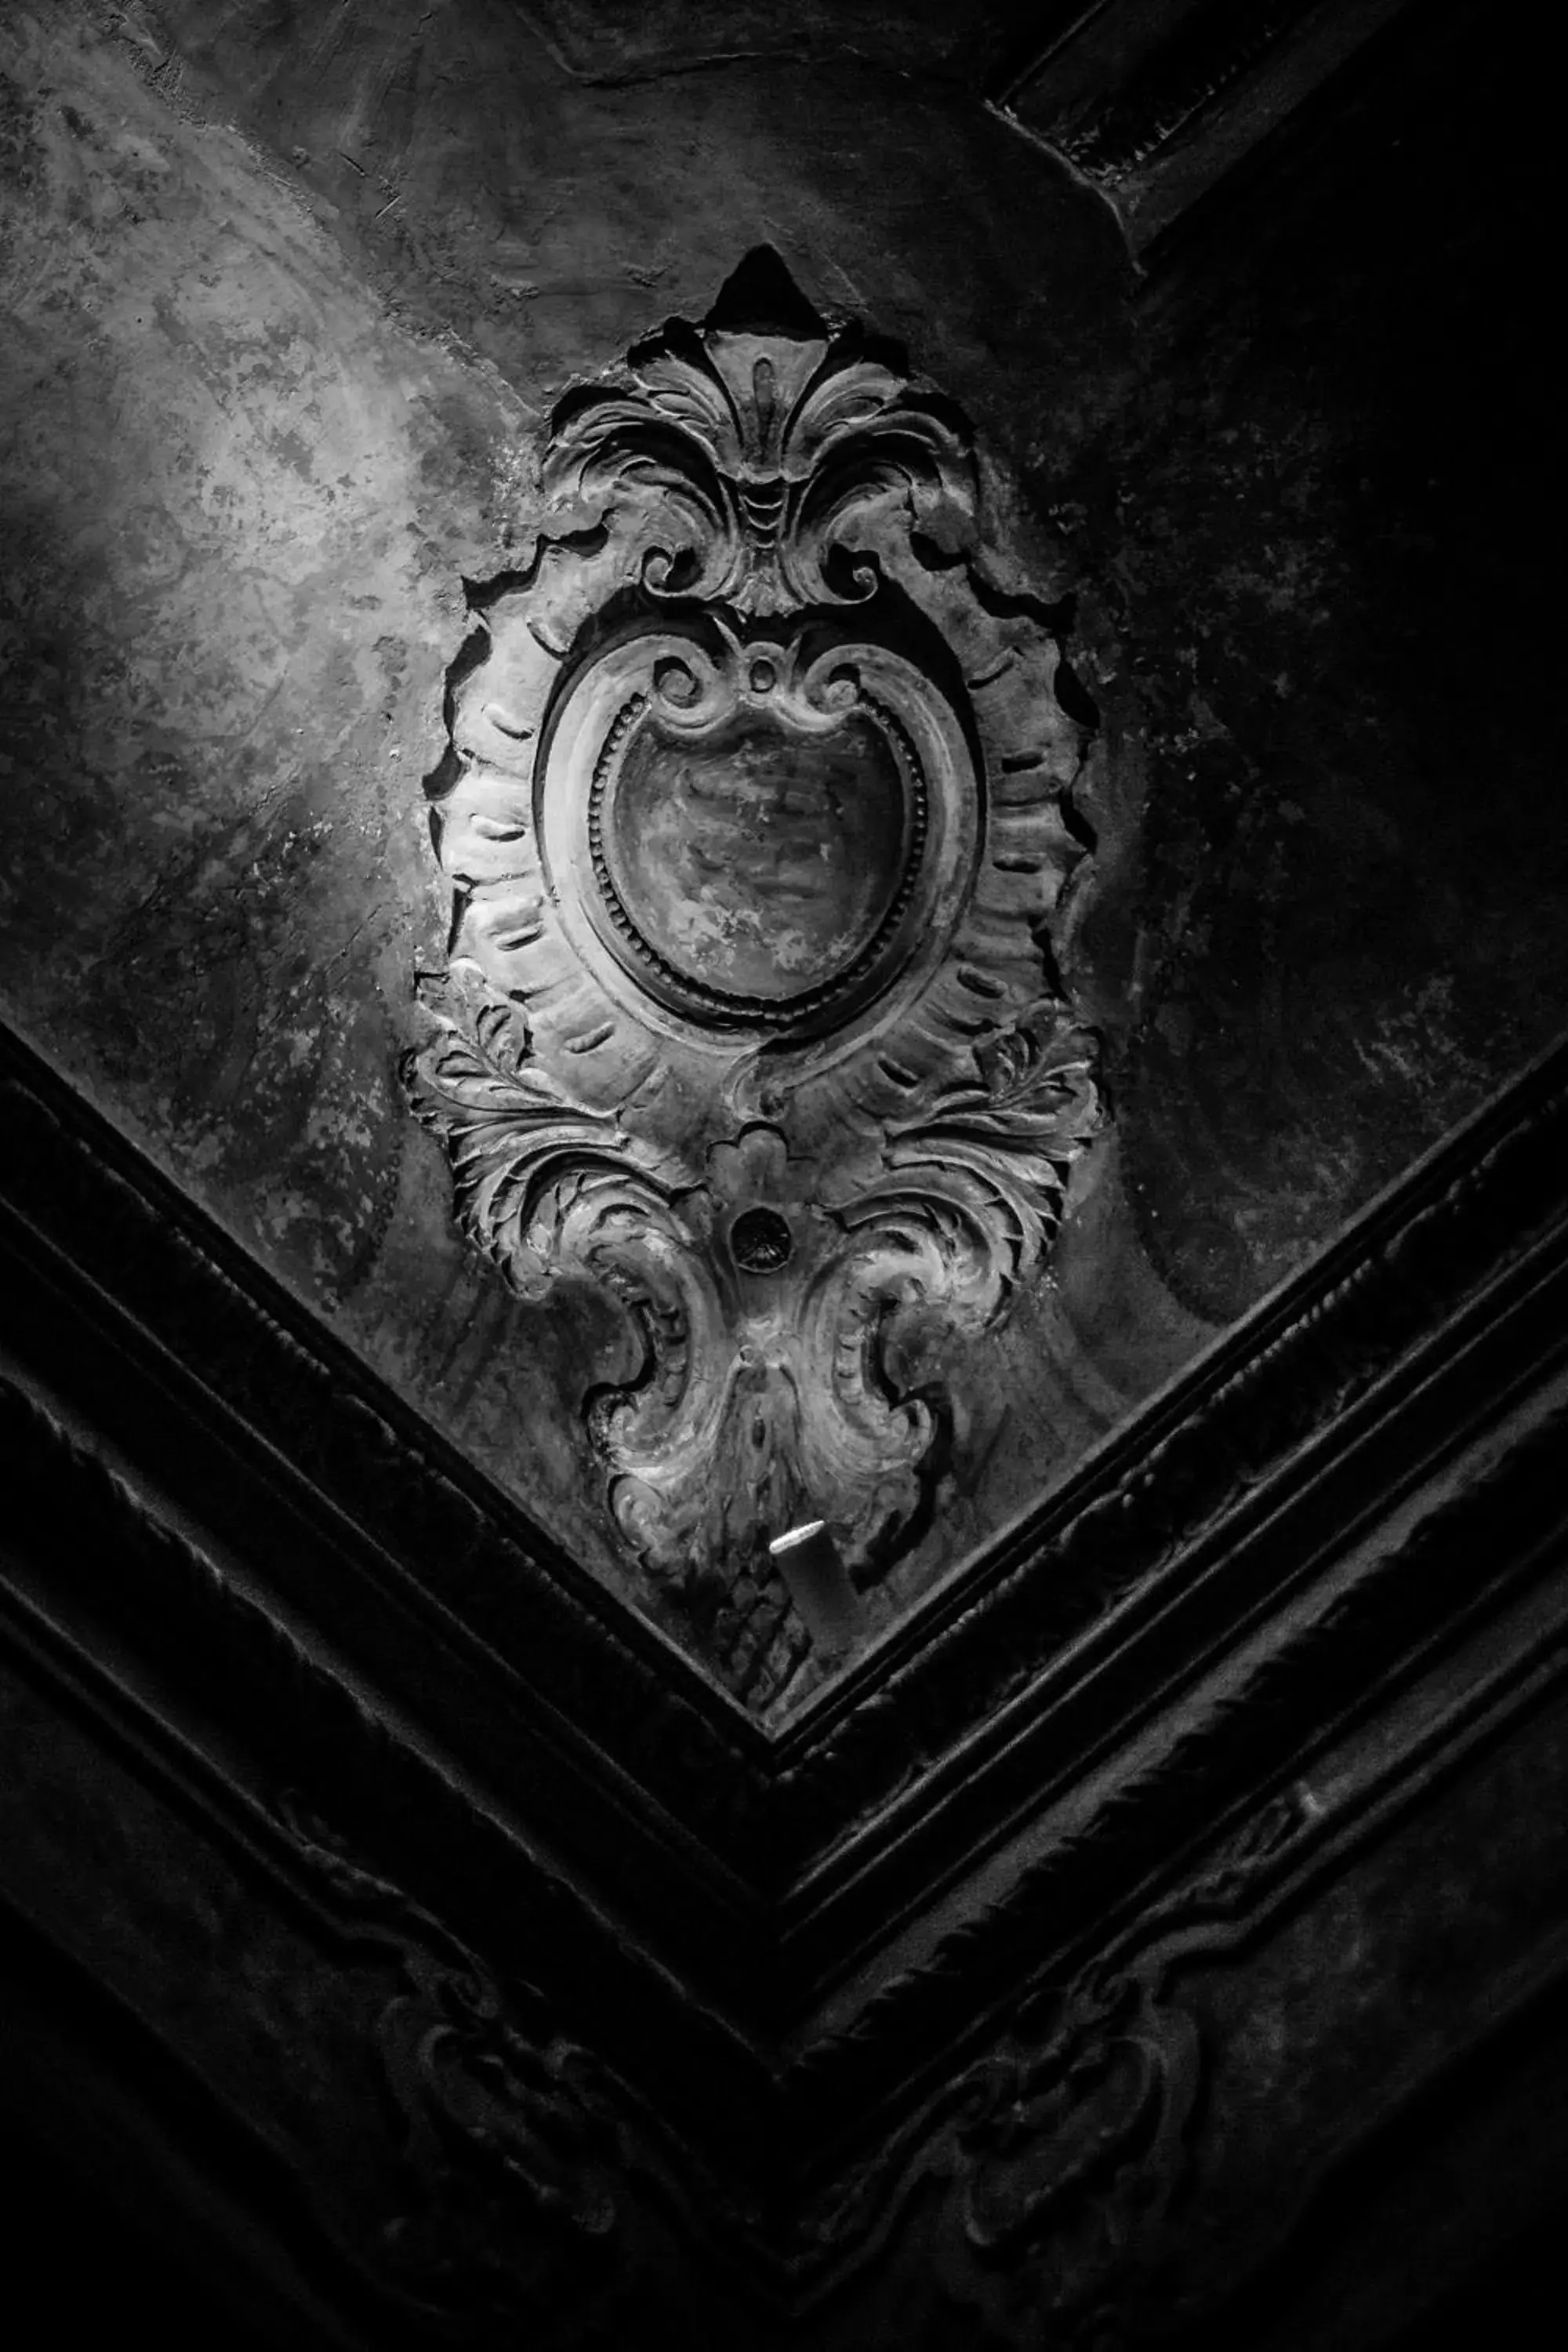 Decorative detail in Relais Della Porta